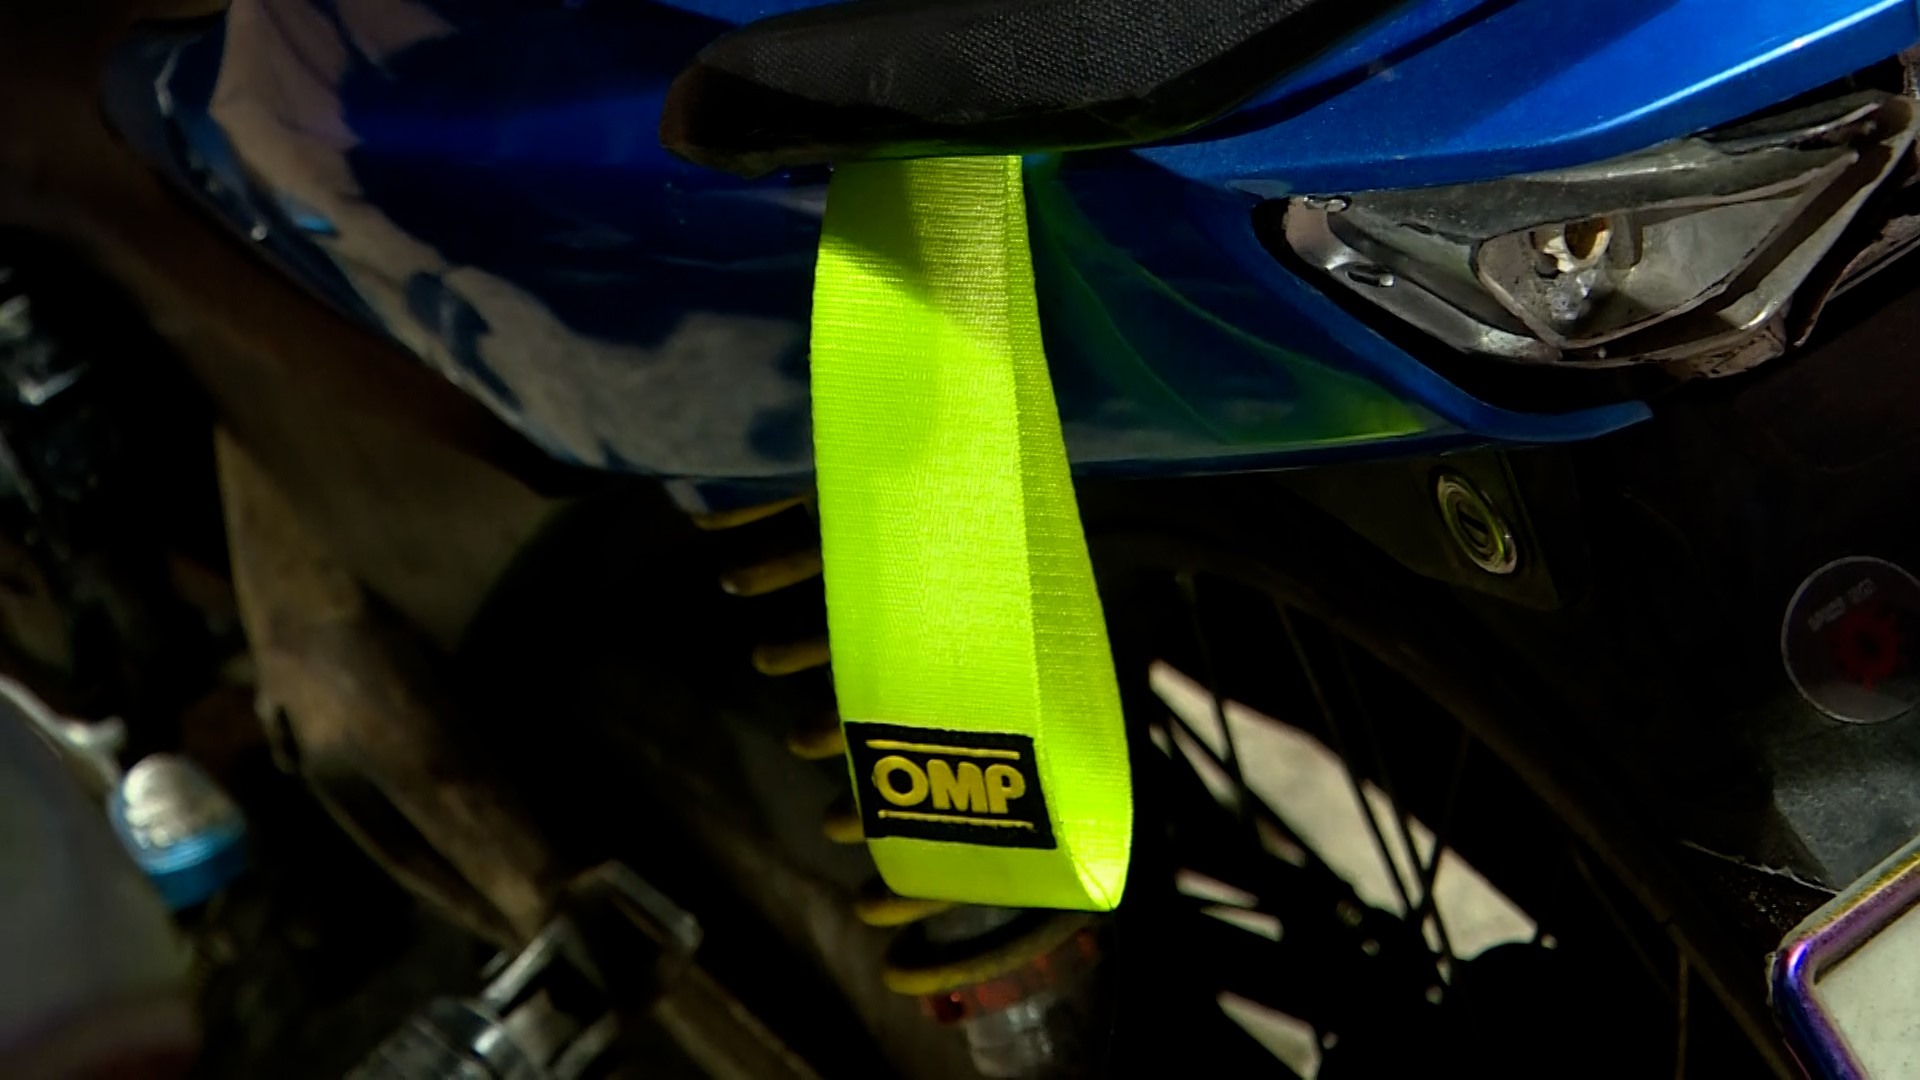 Dải băng có chữ OMP làm dấu hiệu nhận biết riêng của nhóm thanh thiếu niên tụ tập có dầu hiệu đua xe. Ảnh: Đoàn Hưng